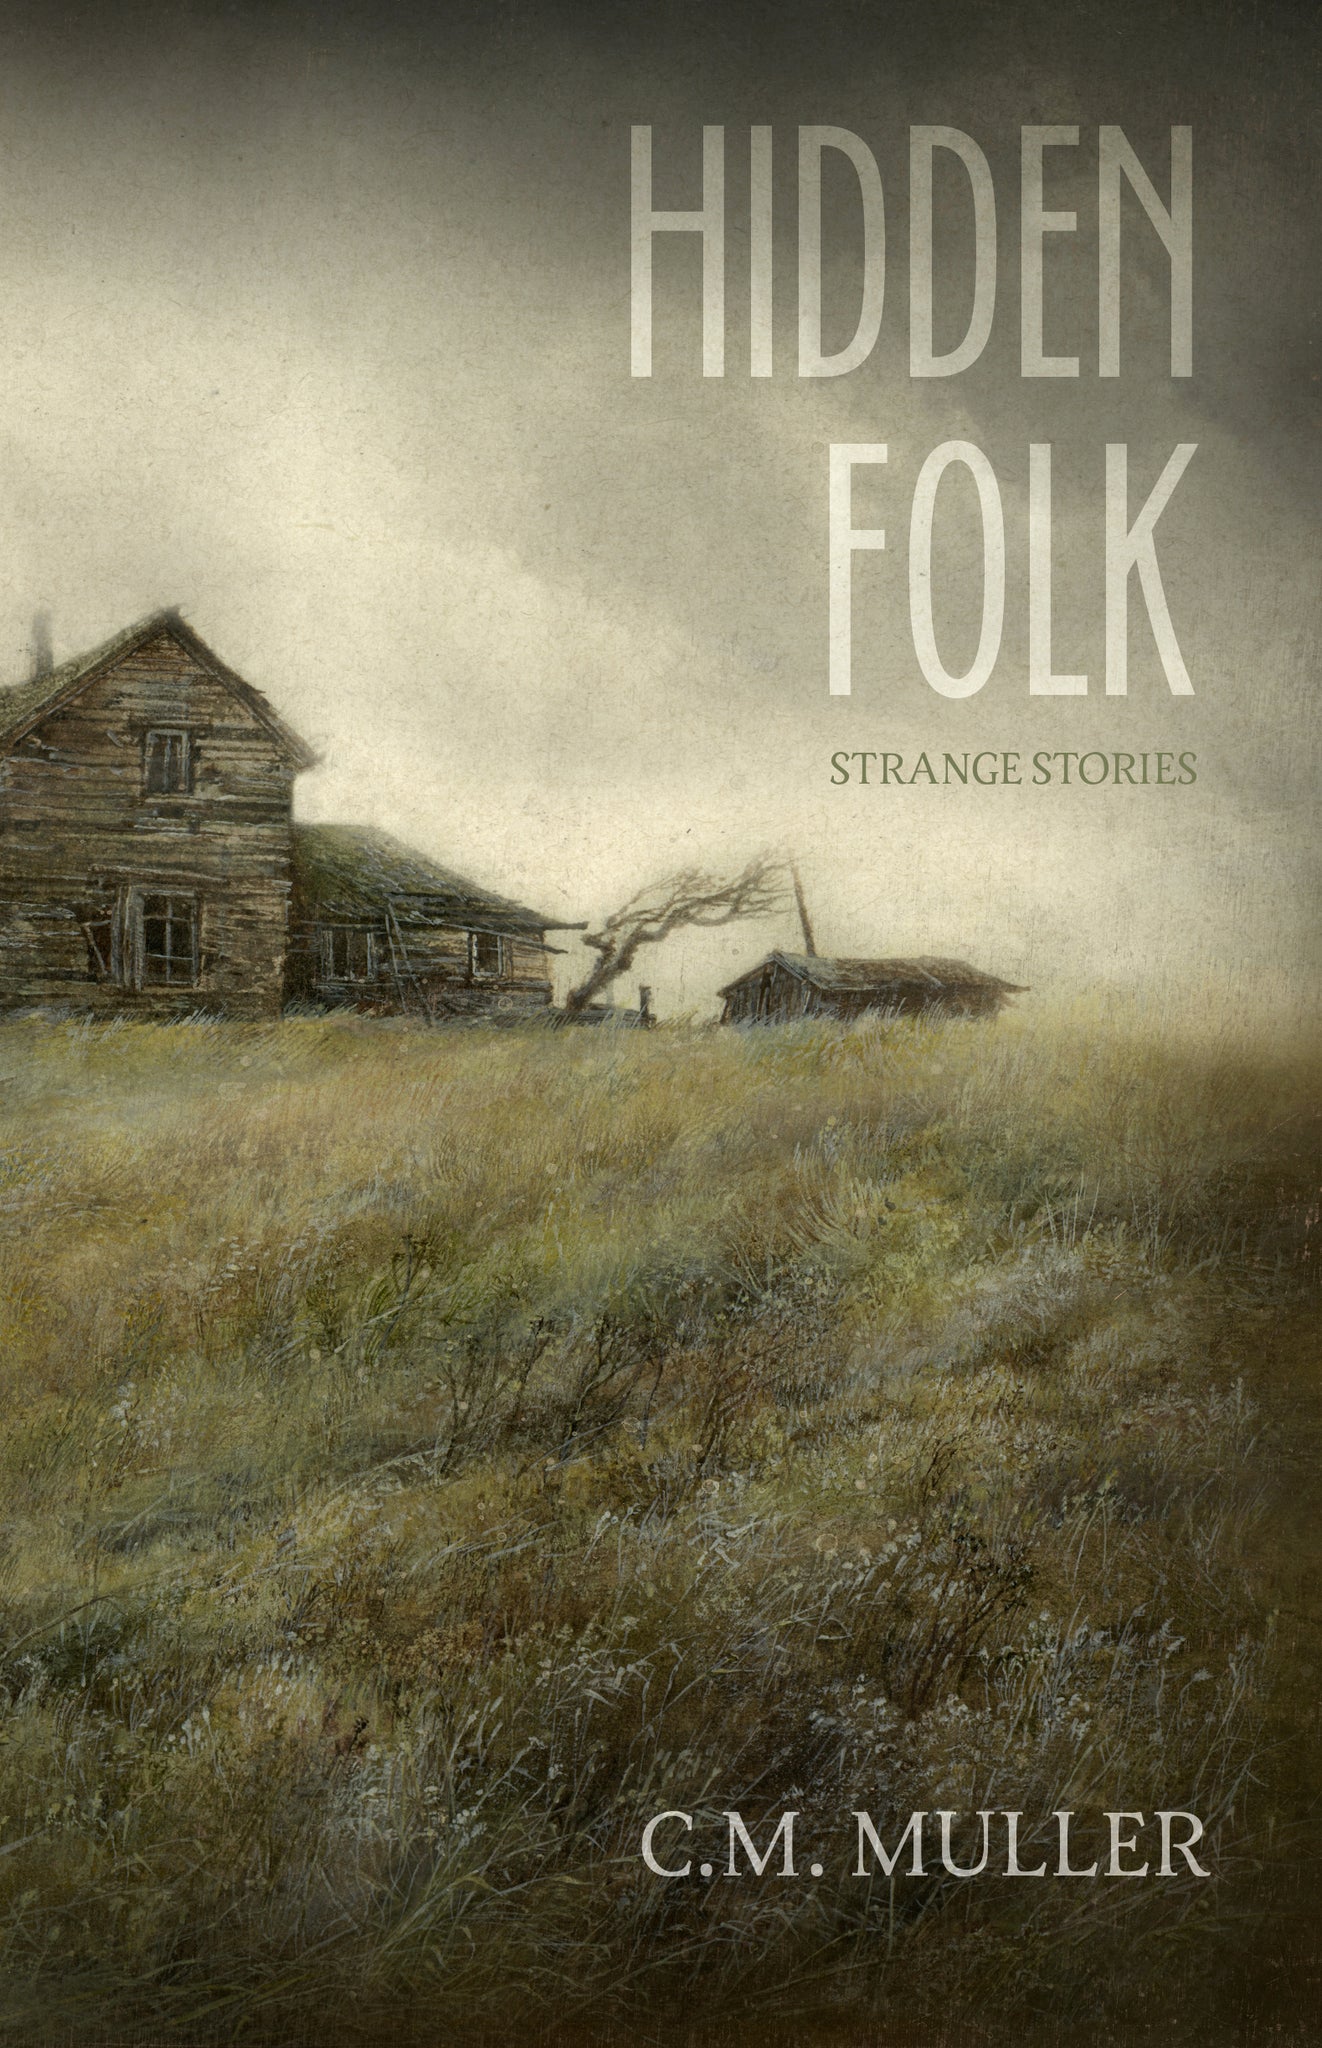 Hidden Folk: Strange Stories by C.M. Muller